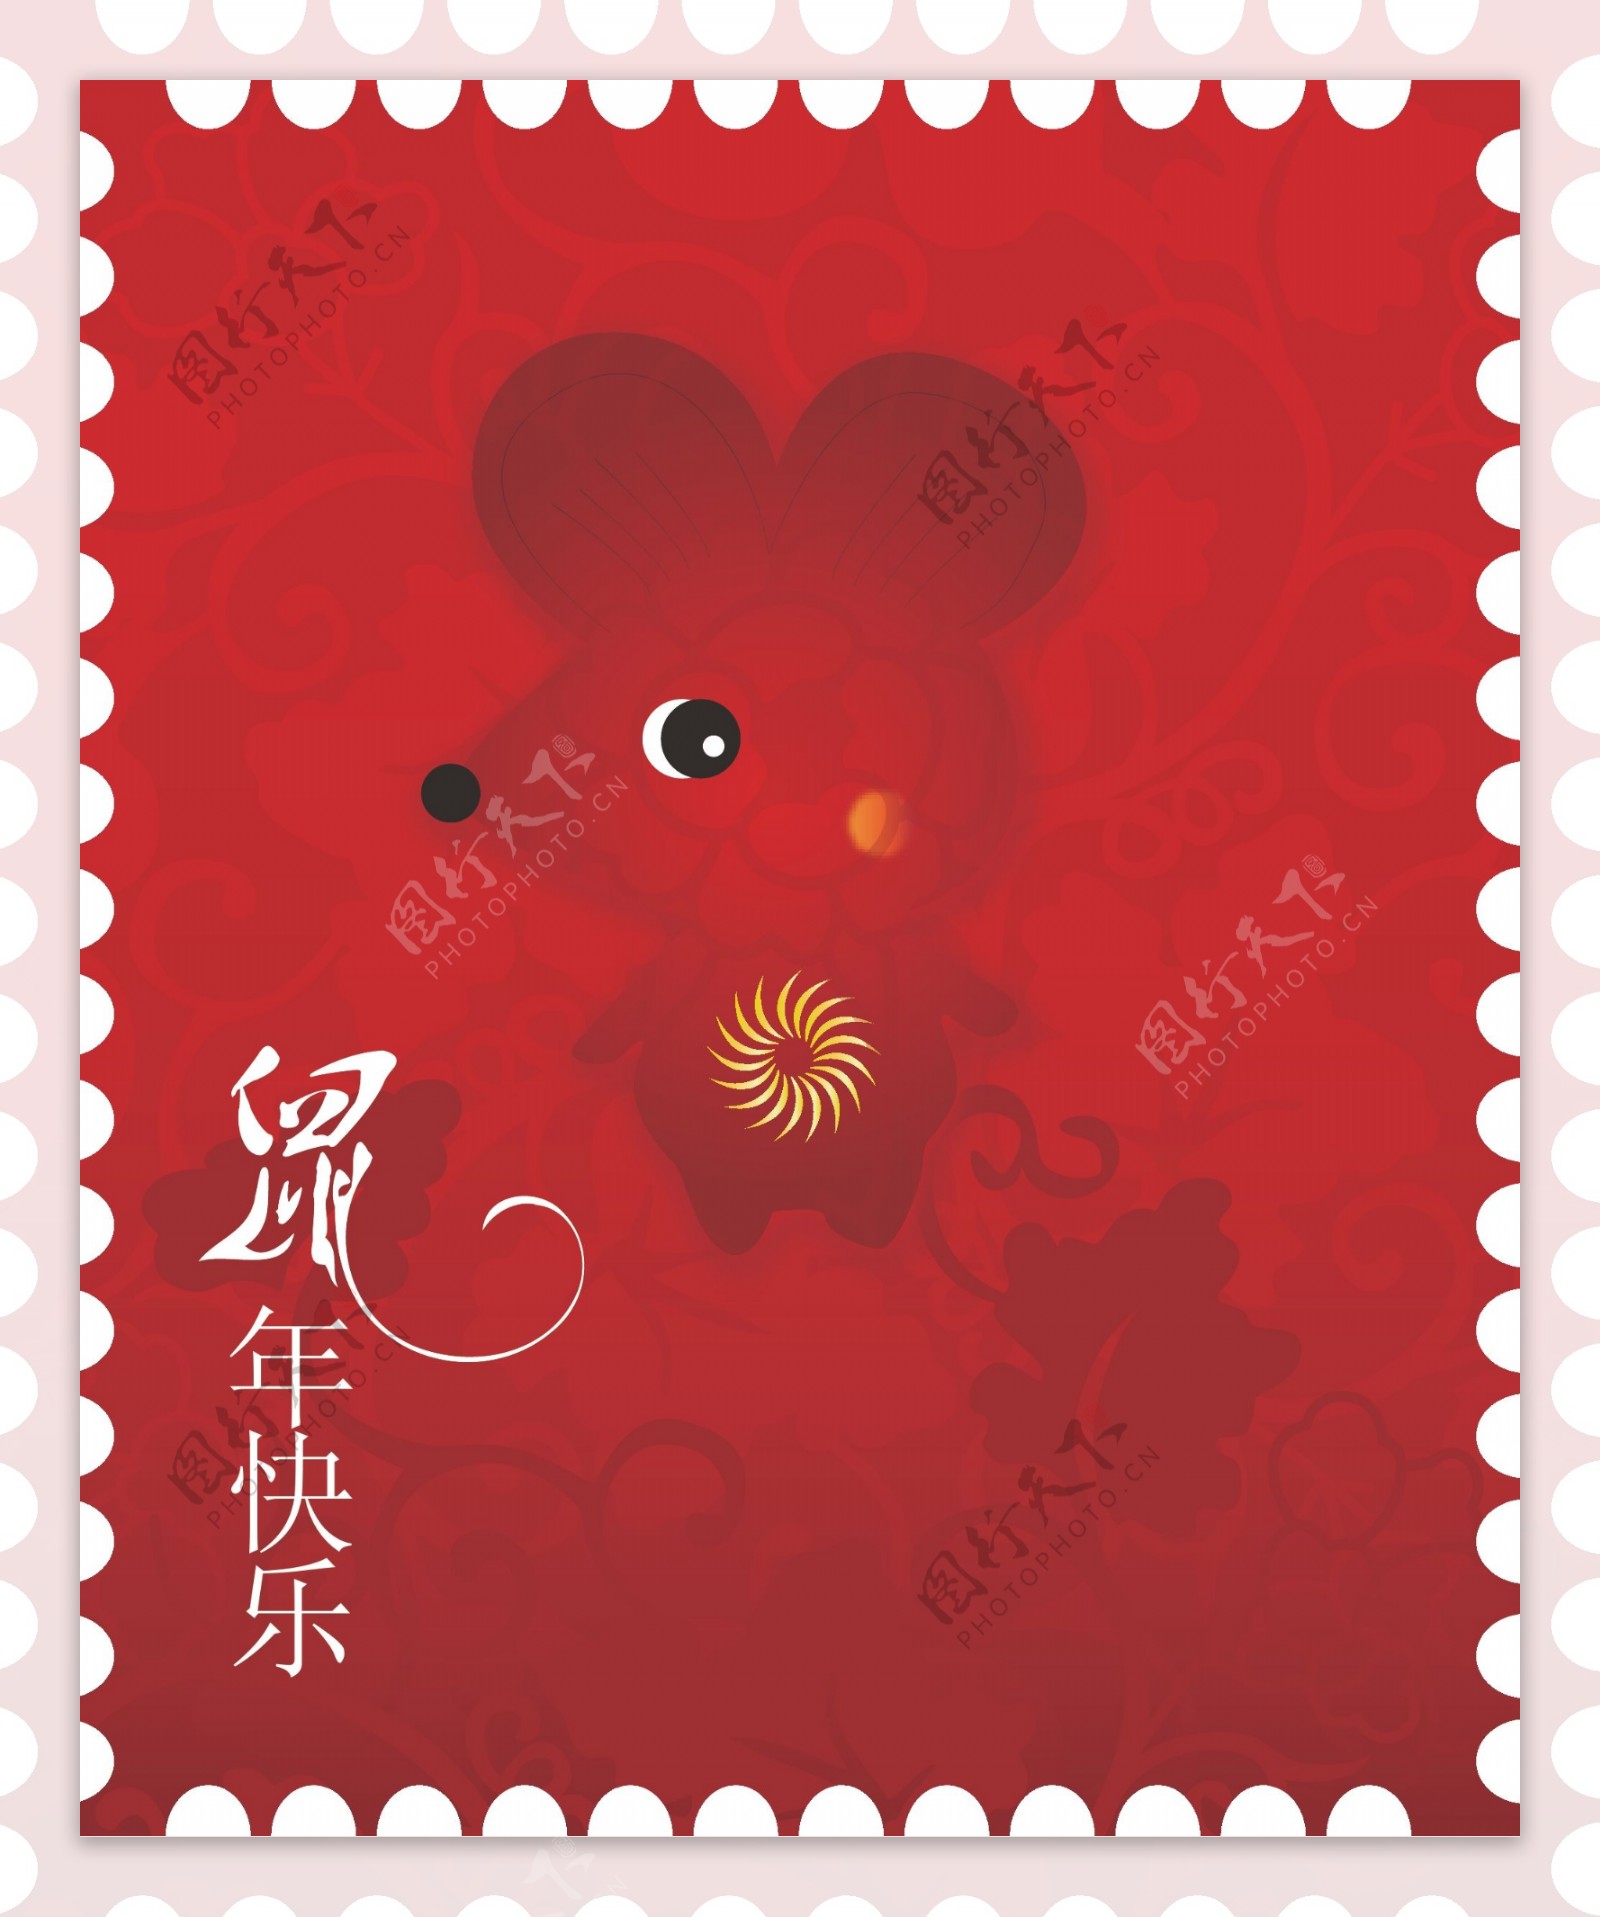 鼠年邮票图片